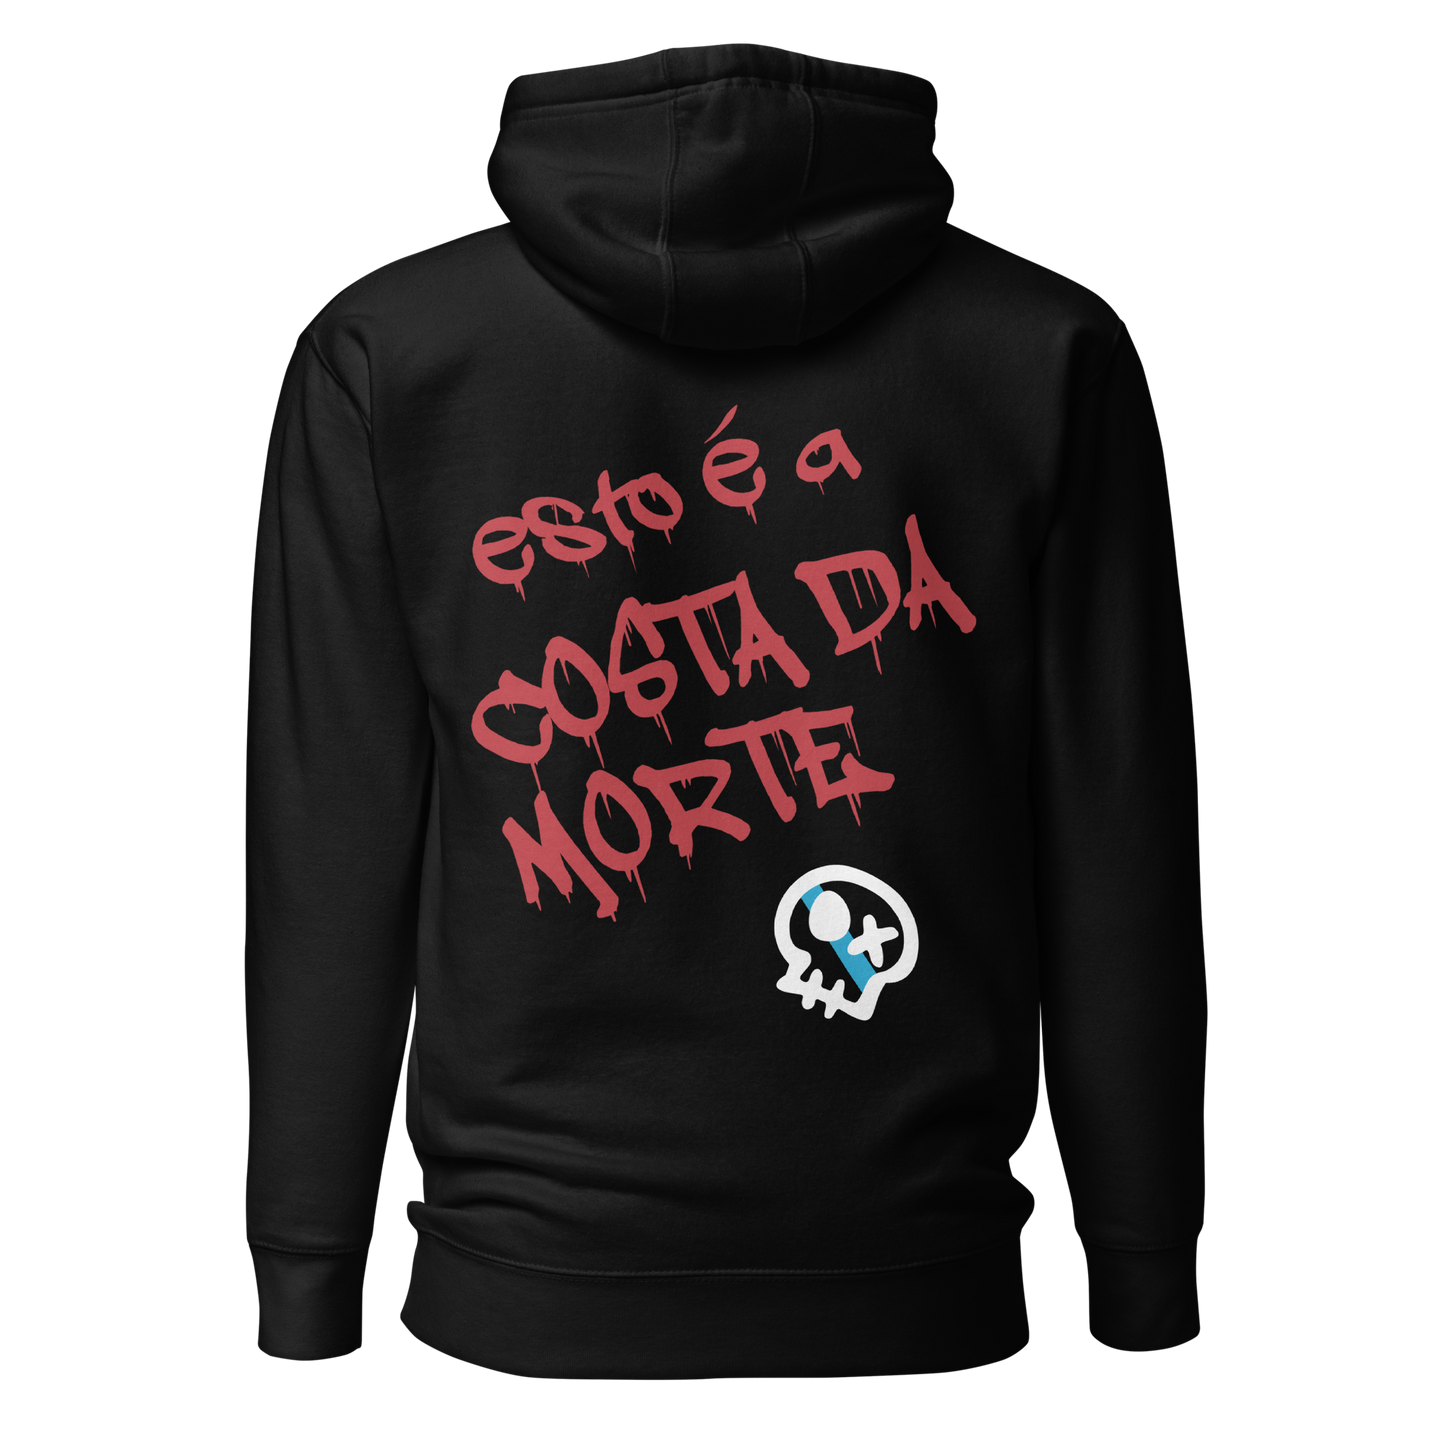 Sweatshirt # GOUXA // Premium Hoodie with Hood and Pocket // Unisex